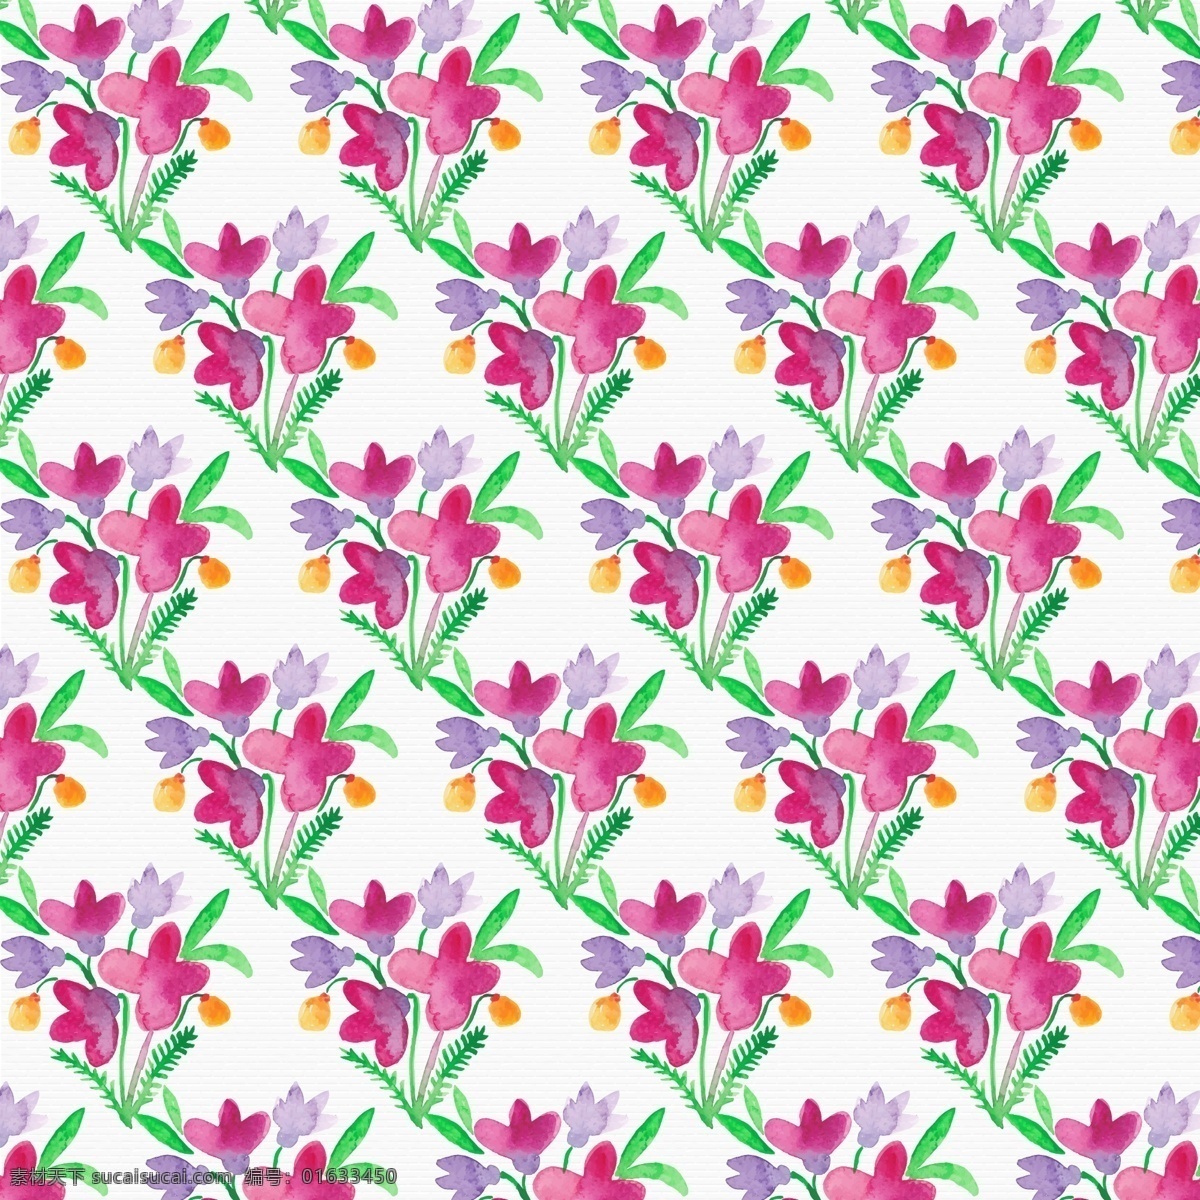 水彩 鲜花 背景 图案 花卉背景素材 广告设计模板 ai素材 水彩花卉素材 展板 礼品 包装纸 漂亮 紫花 红花 绿叶